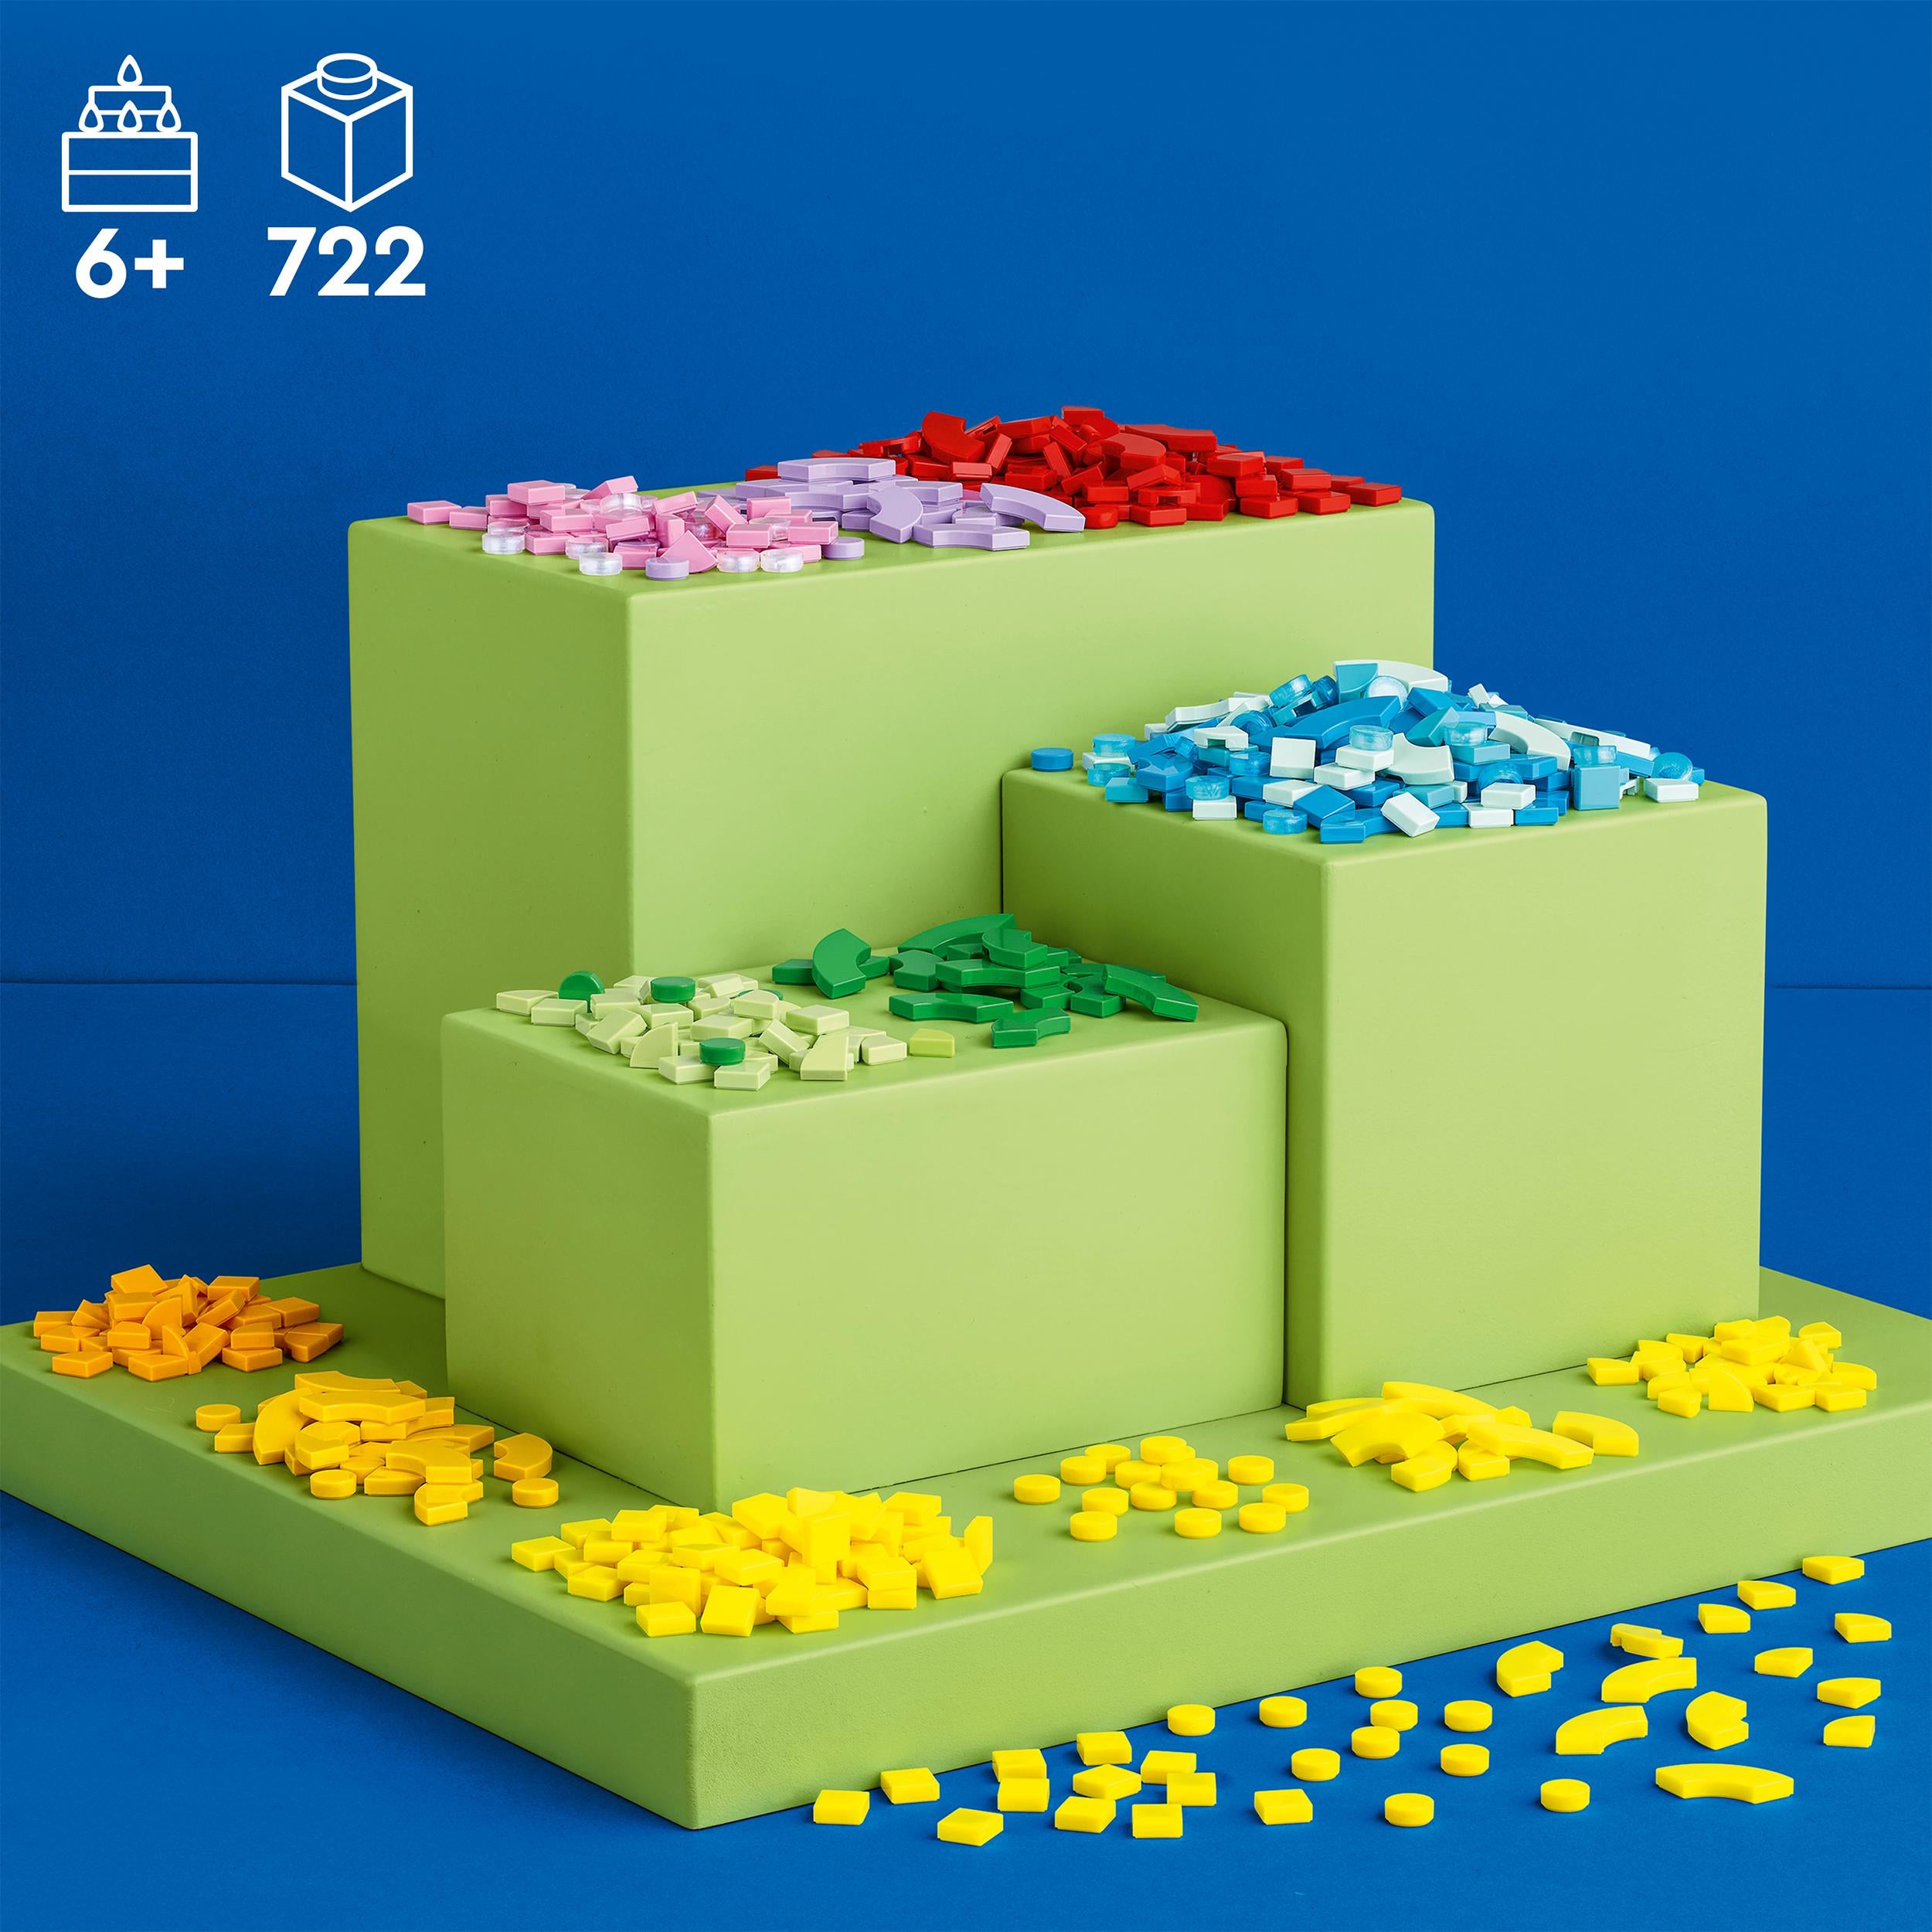 41950 LEGO® Dots - MEGA PACK - Lettere e caratteri